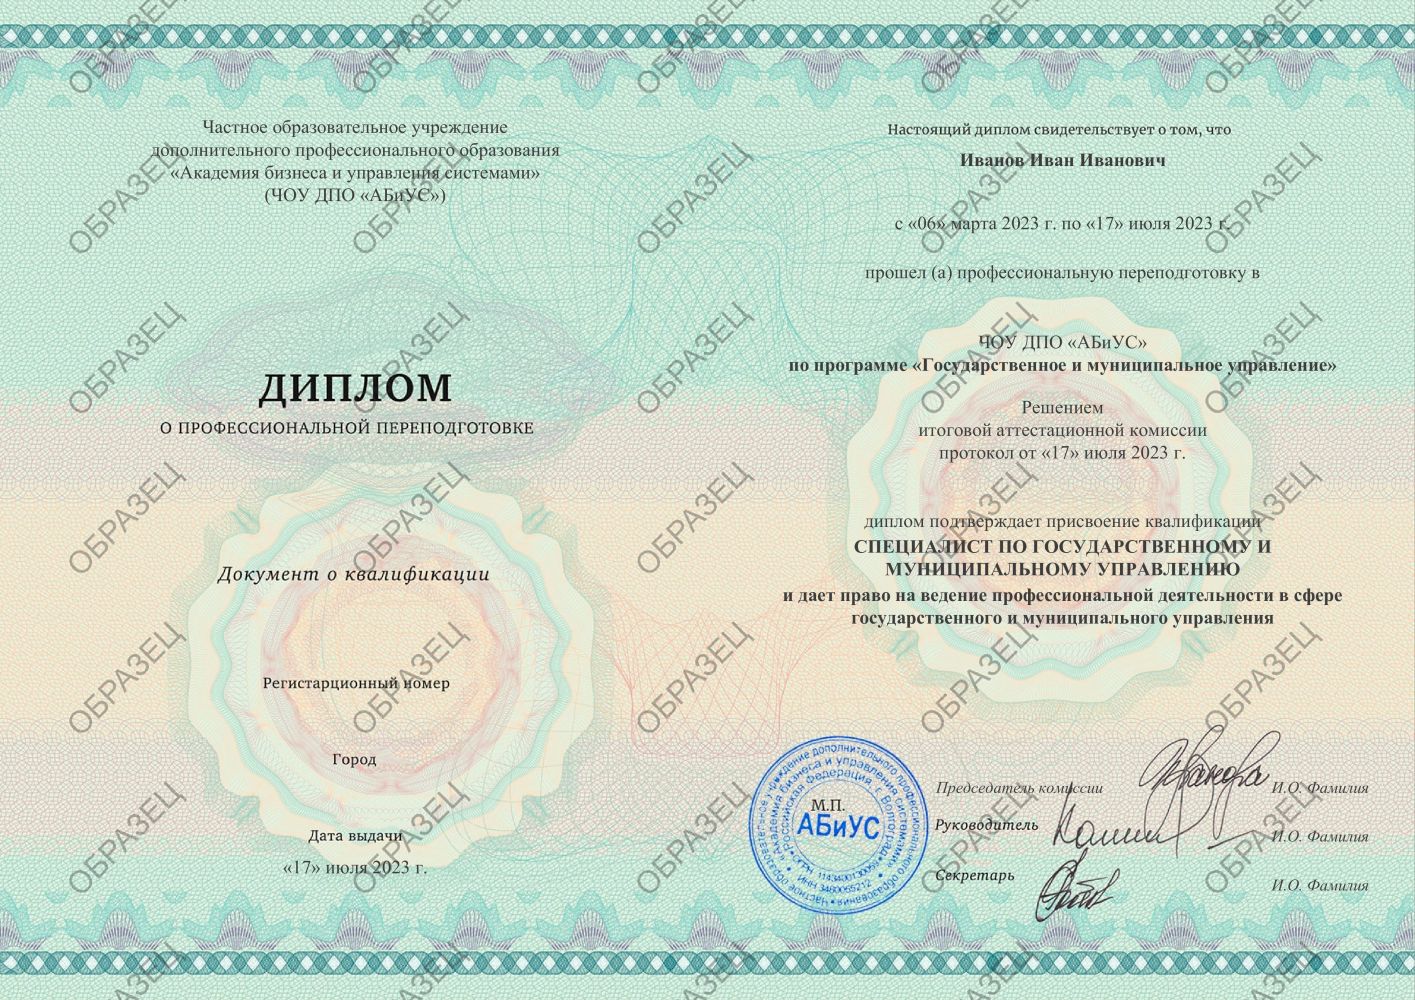 Диплом Государственное и муниципальное управление 510 часов 14688 руб.